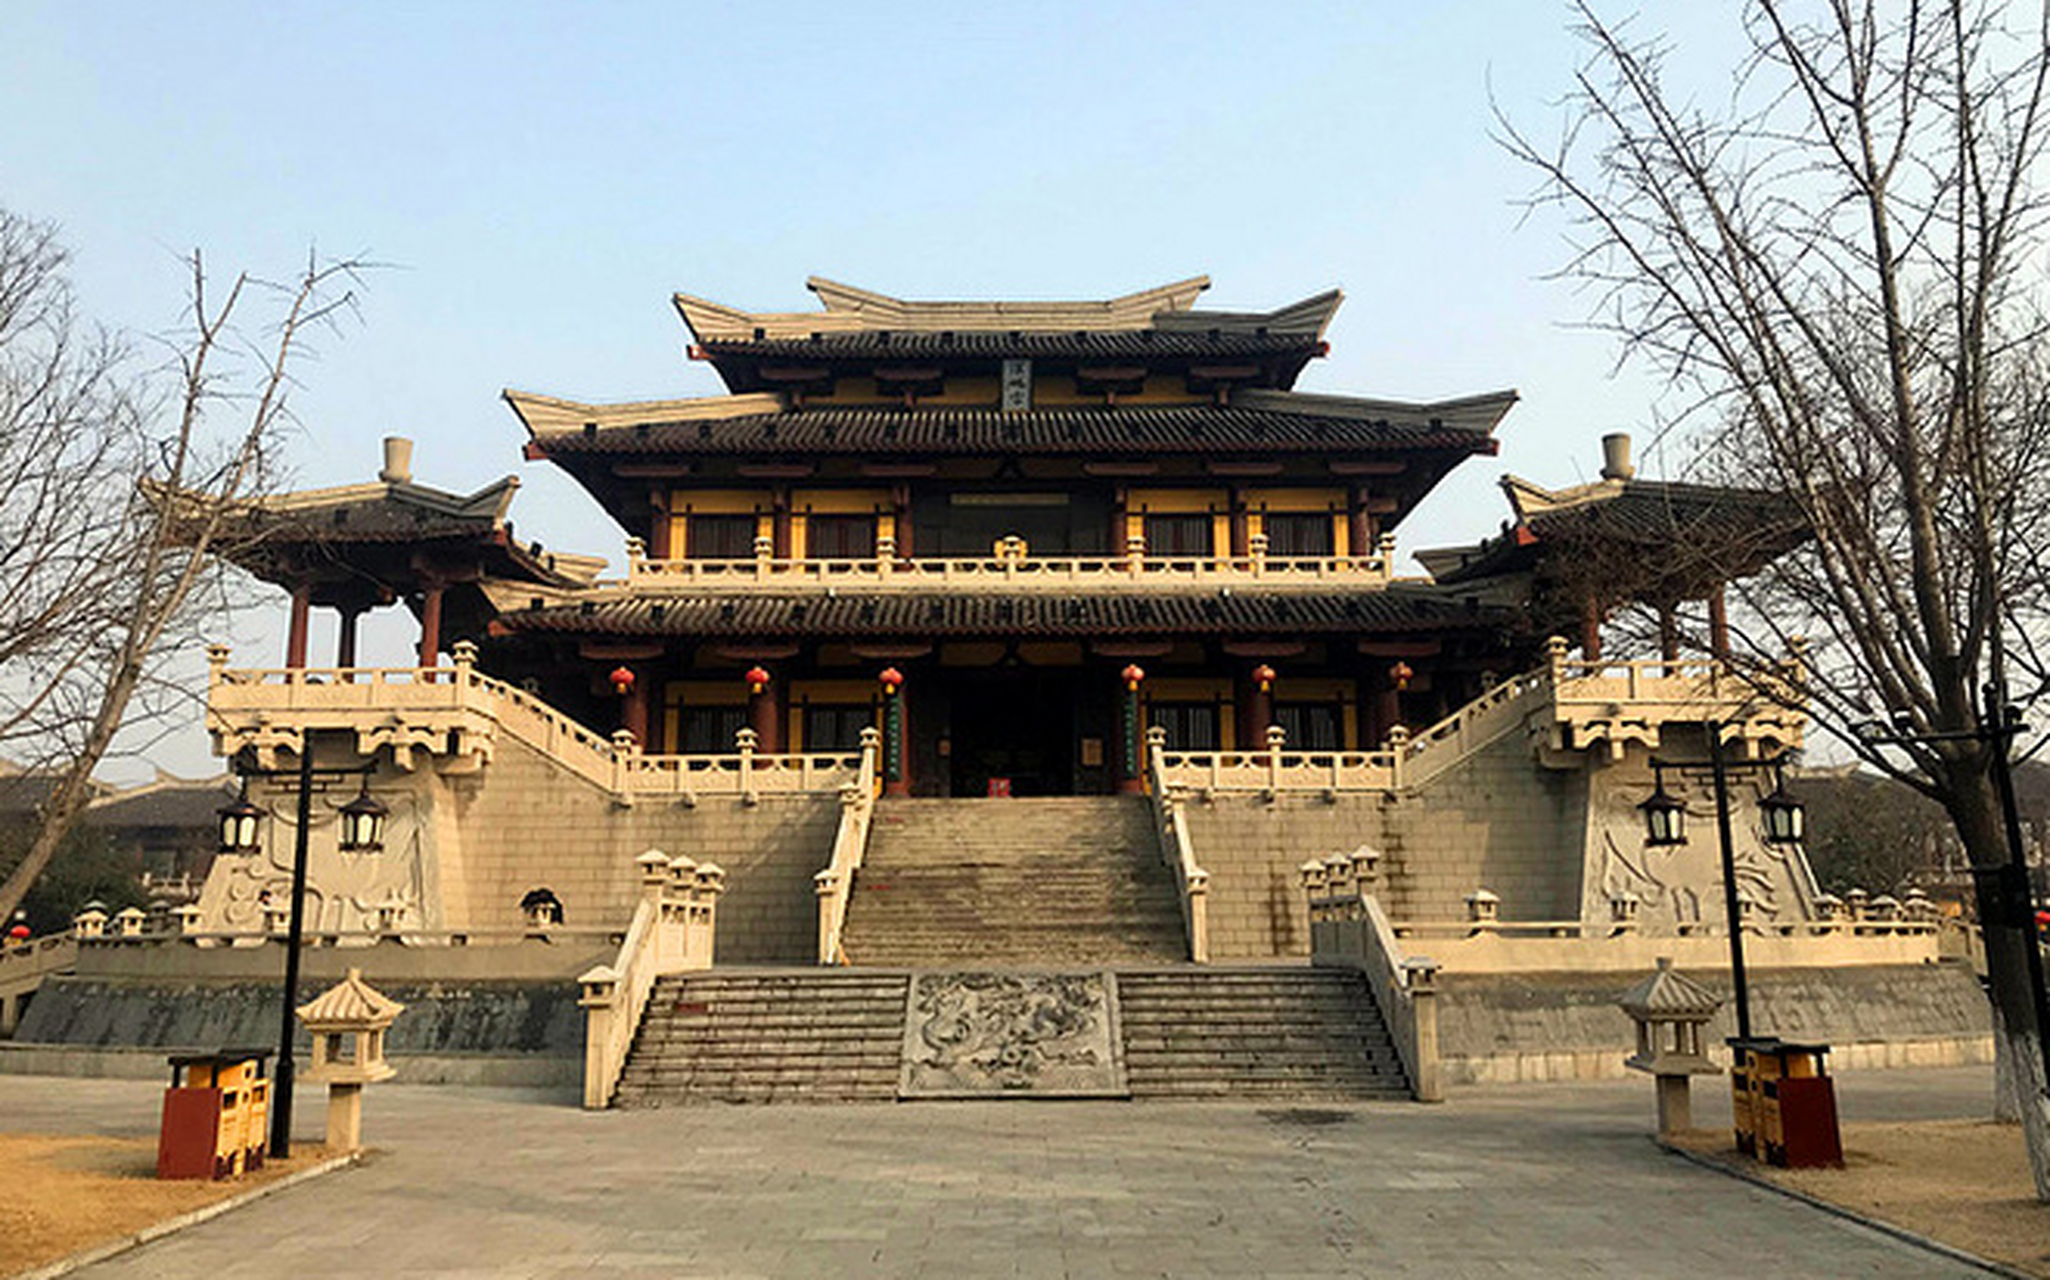 这里既有汉代建筑的雄伟与精致,刘邦的传奇故事和深厚的文化底蕴等